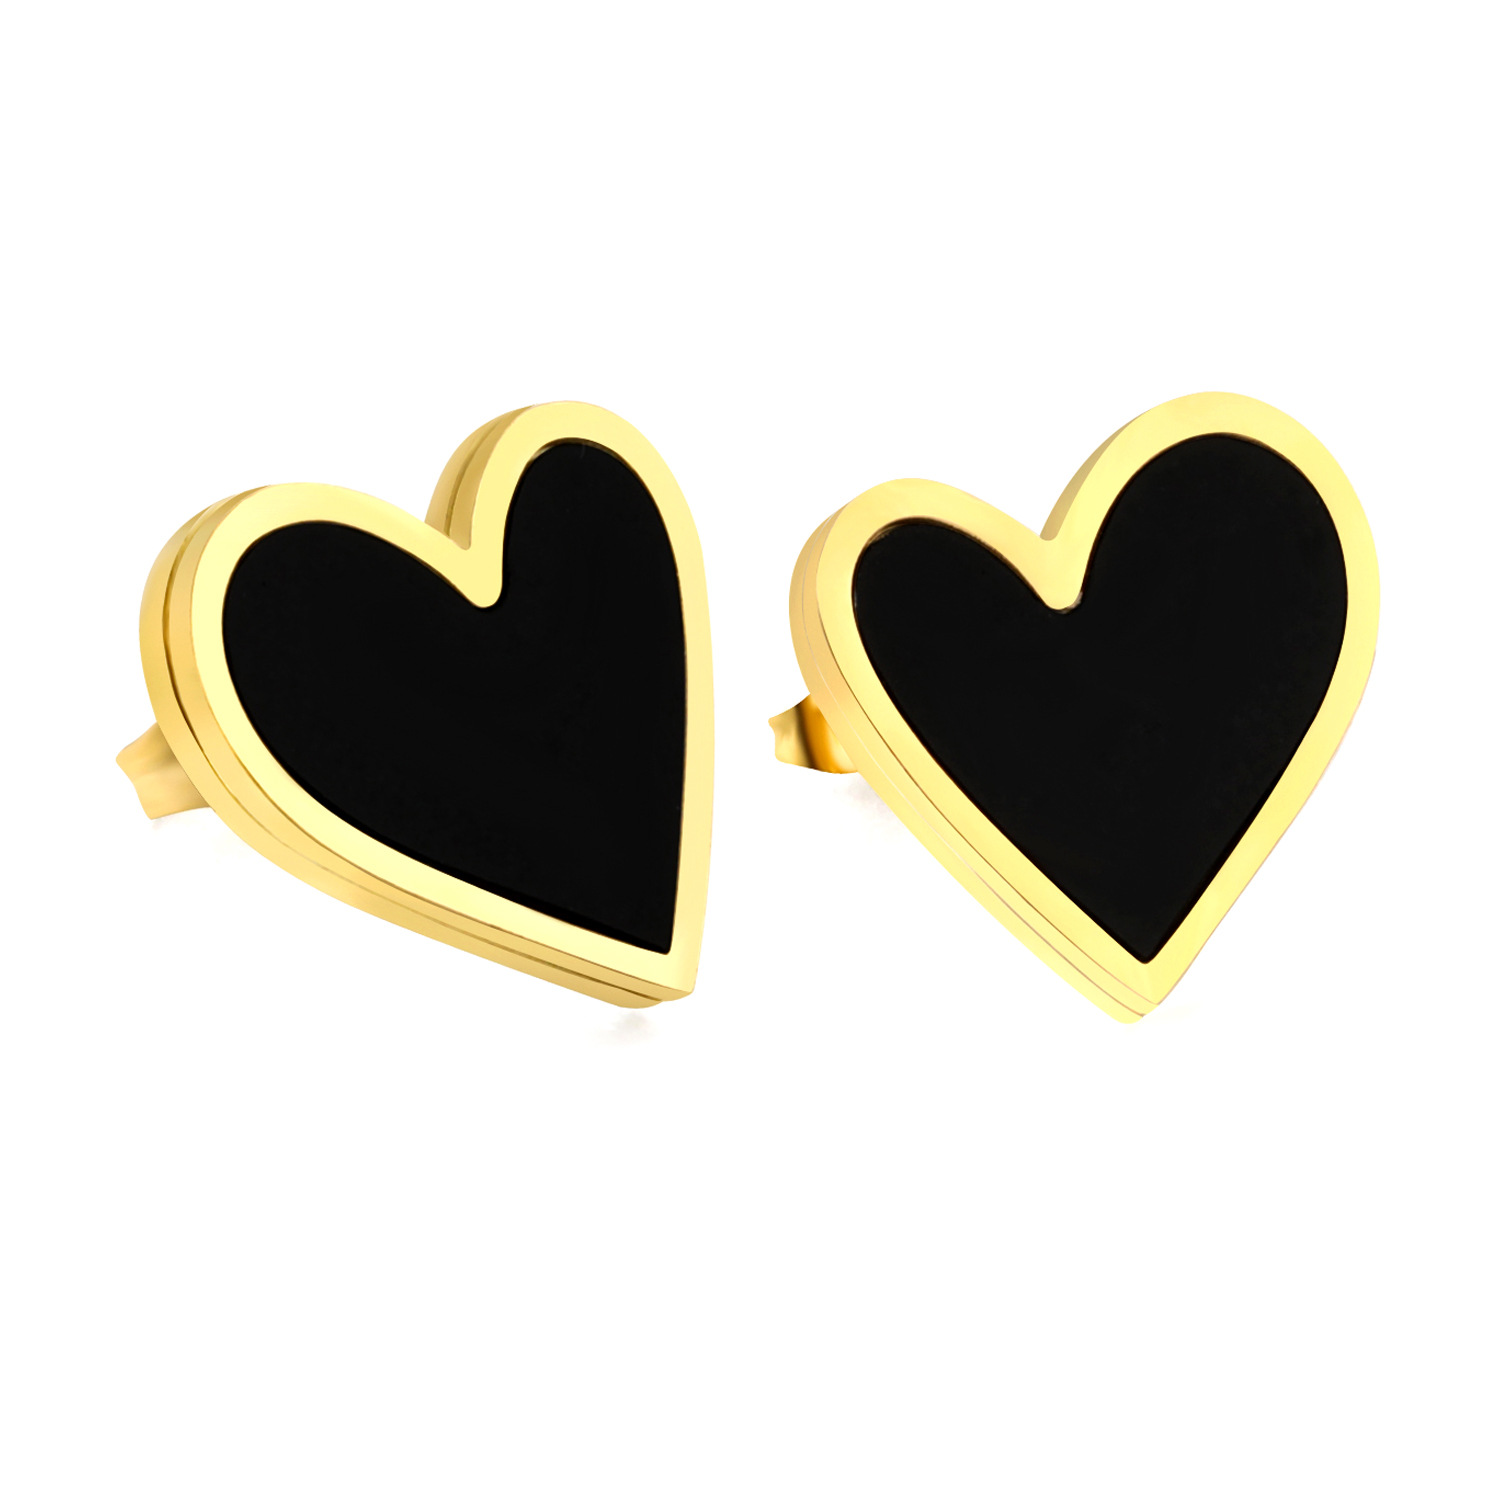 5:Black shell earrings gold